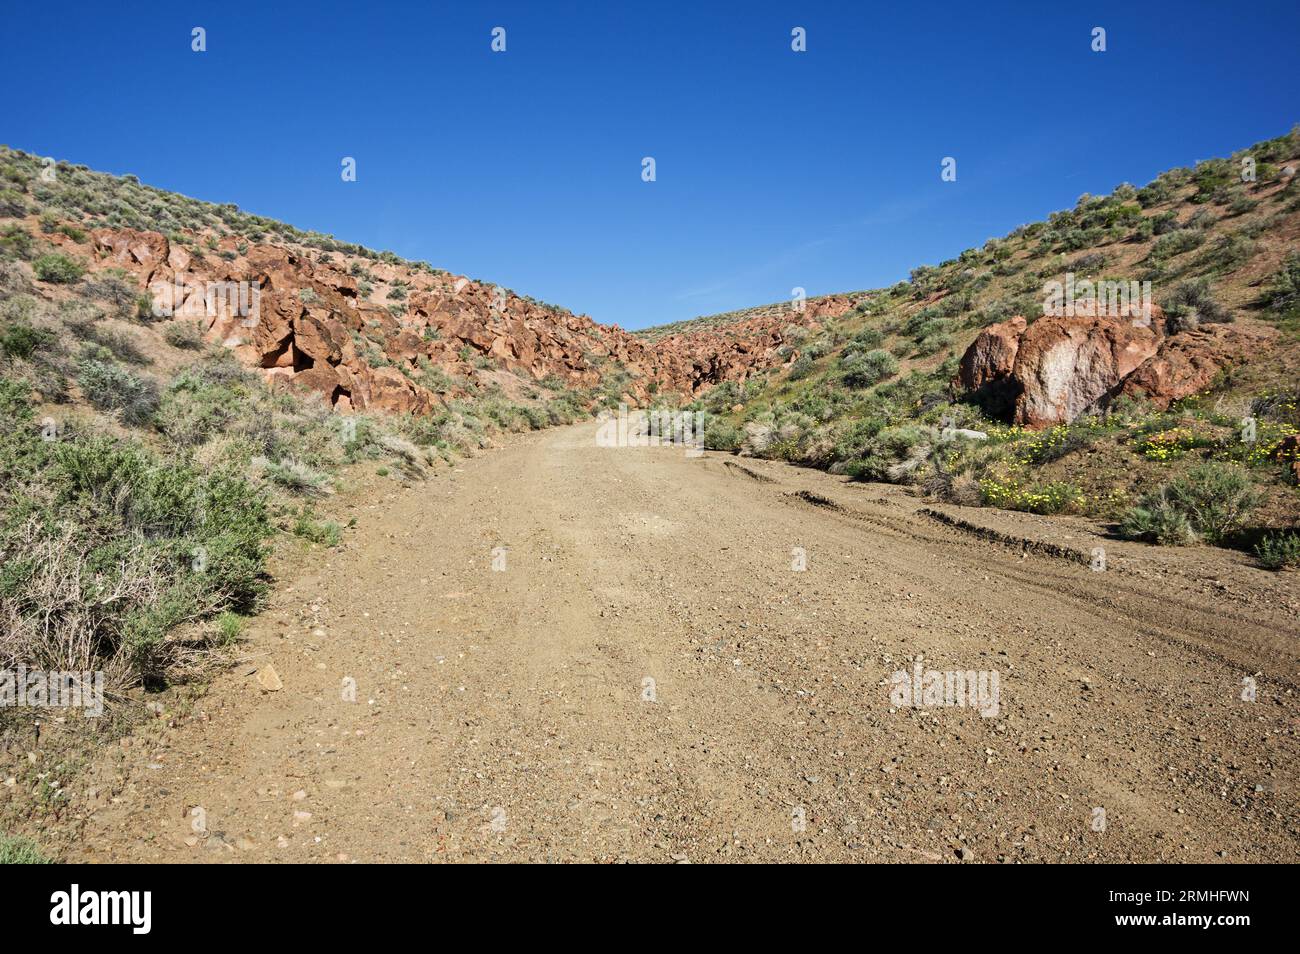 Chidago Canyon Road est une route de gravier rurale qui mène à un canyon désertique dans les plateaux volcaniques de la Californie orientale Banque D'Images